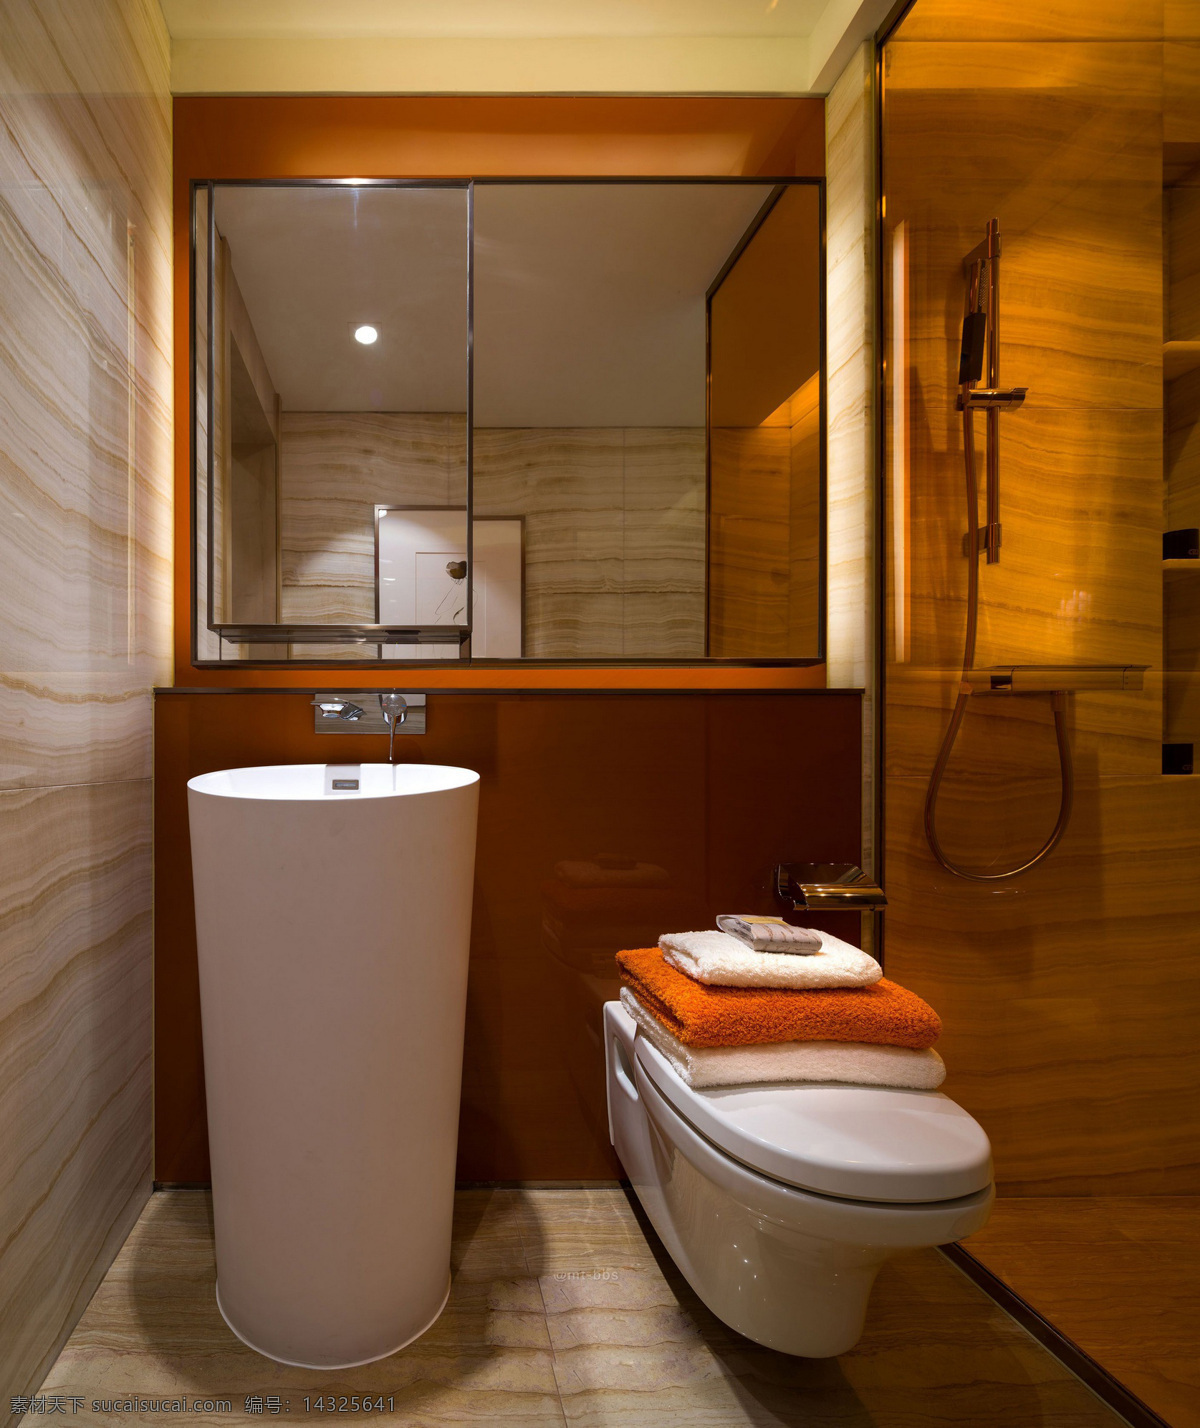 现代 雅致 卫生间 深 橘 色 背景 墙 室内装修 效果图 瓷砖地板 瓷砖背景墙 木材 颜色 方形镜子 深色柜子